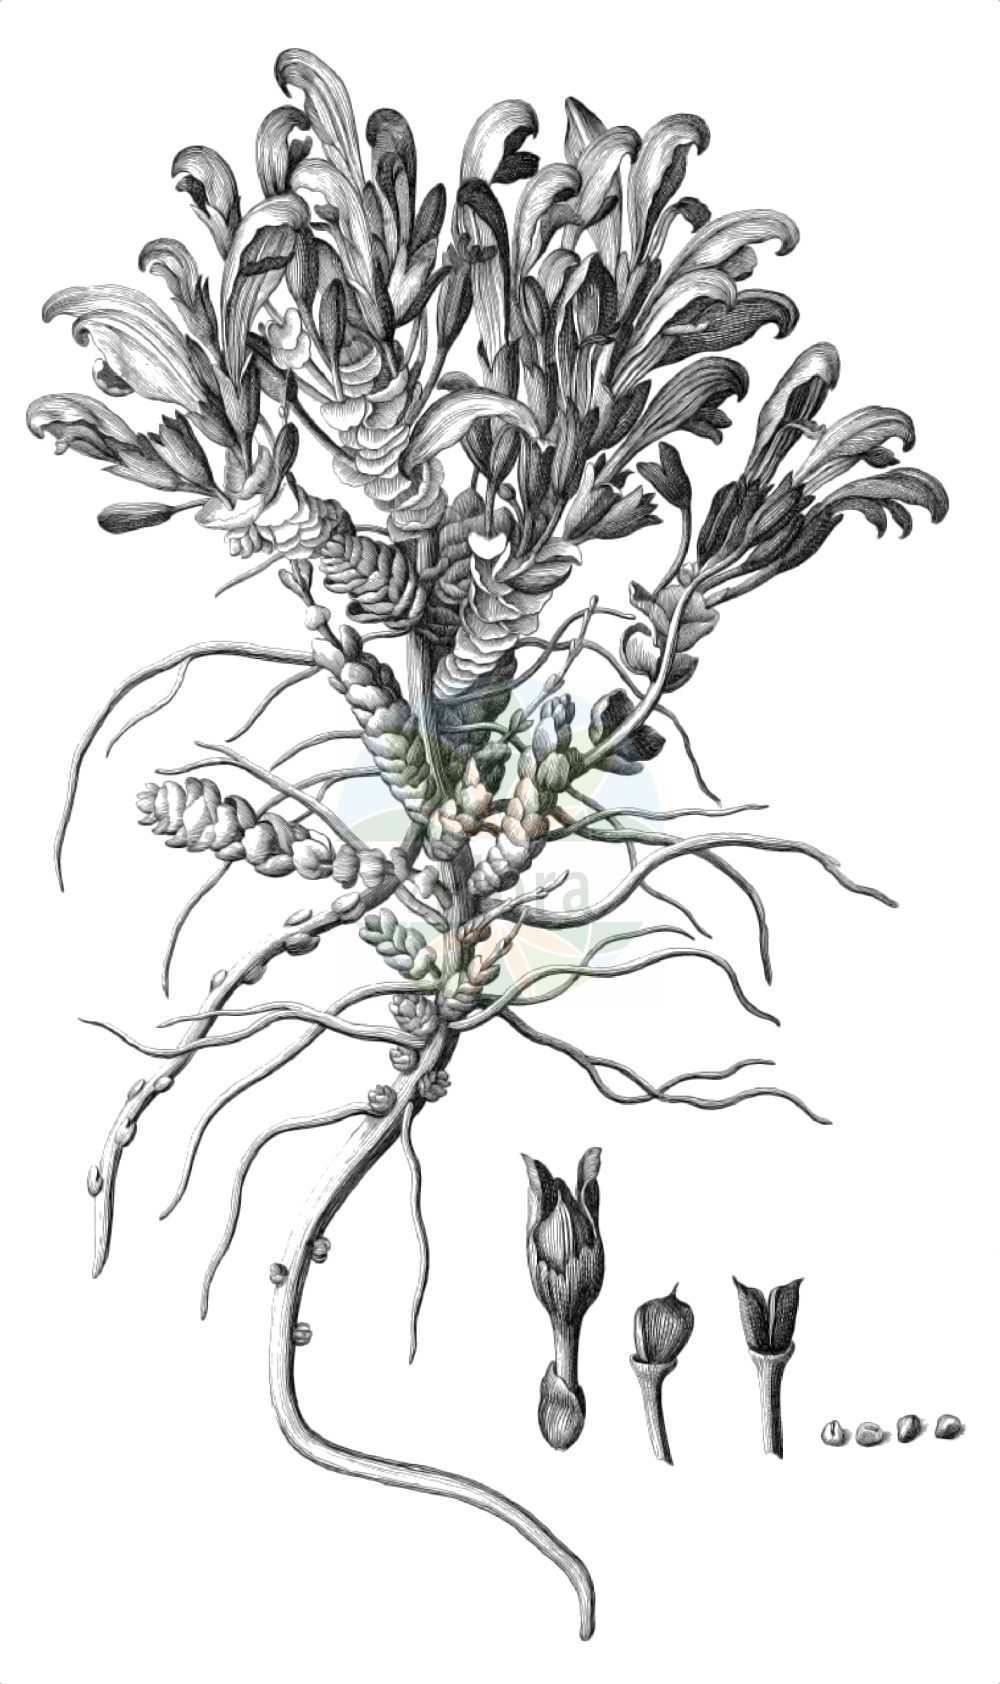 Historische Abbildung von Lathraea clandestina (Purple Toothwort). Das Bild zeigt Blatt, Bluete, Frucht und Same. ---- Historical Drawing of Lathraea clandestina (Purple Toothwort). The image is showing leaf, flower, fruit and seed.(Lathraea clandestina,Purple Toothwort,Clandestina rectiflora,Lathraea clandestina,Lathraea,Schuppenwurz,Toothwort,Orobanchaceae,Sommerwurzgewächse,Broomrape family,Blatt,Bluete,Frucht,Same,leaf,flower,fruit,seed,Dodart (1788))